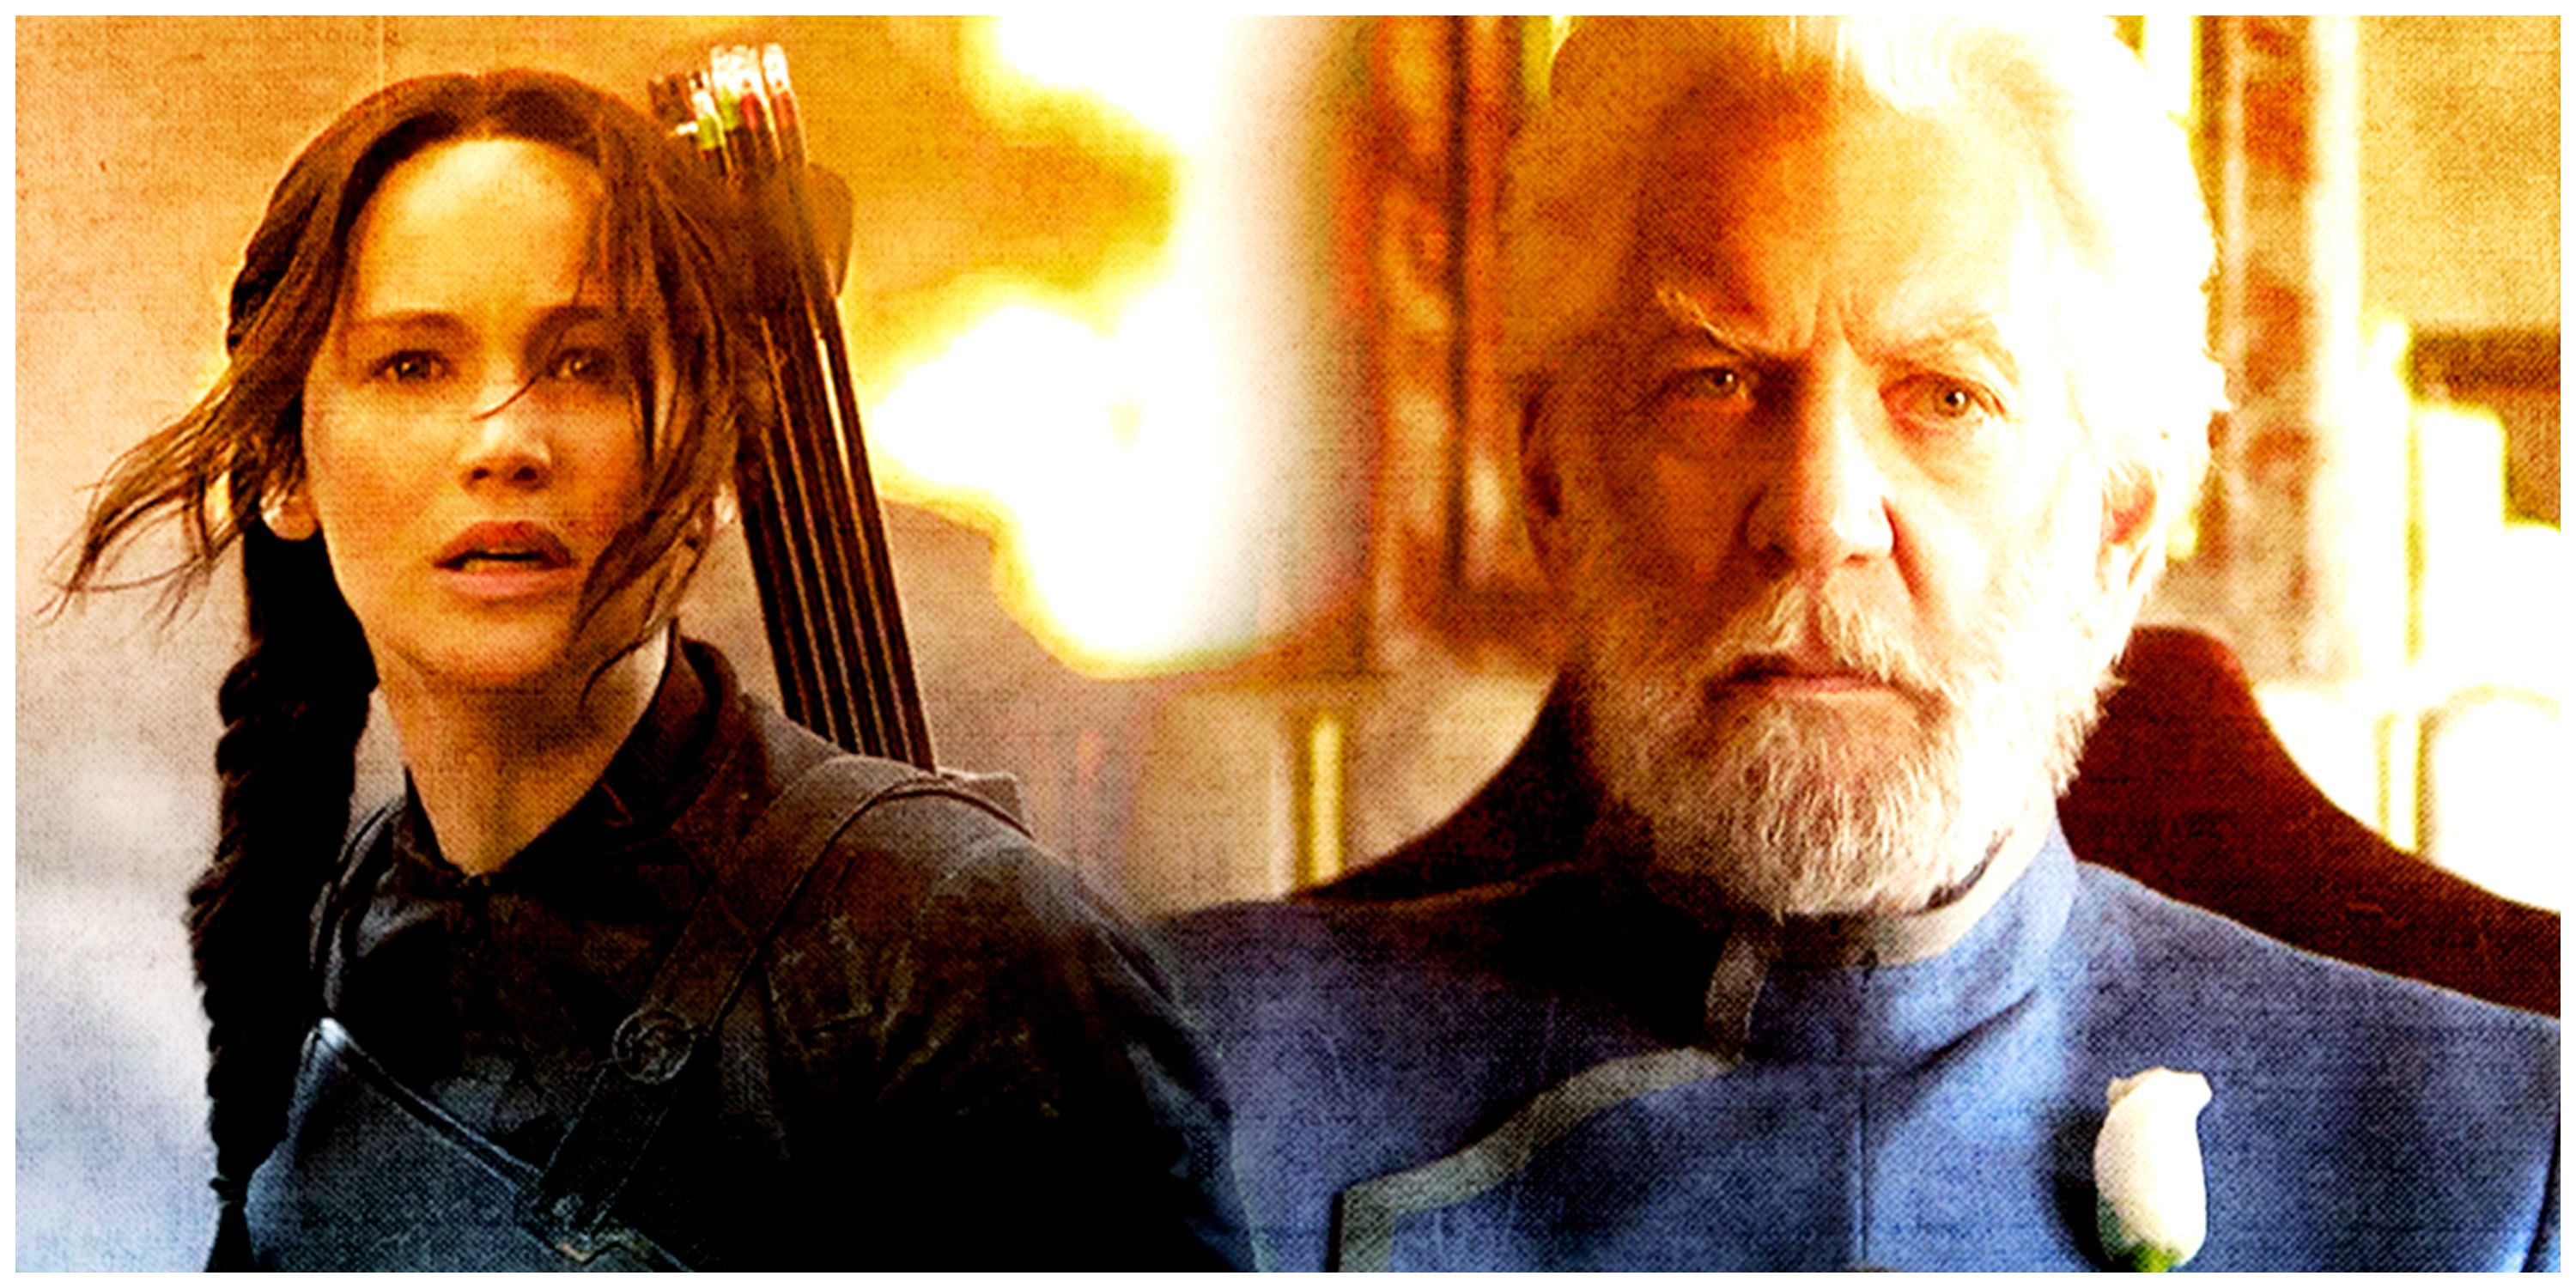 Katniss Everdeen and President Snow